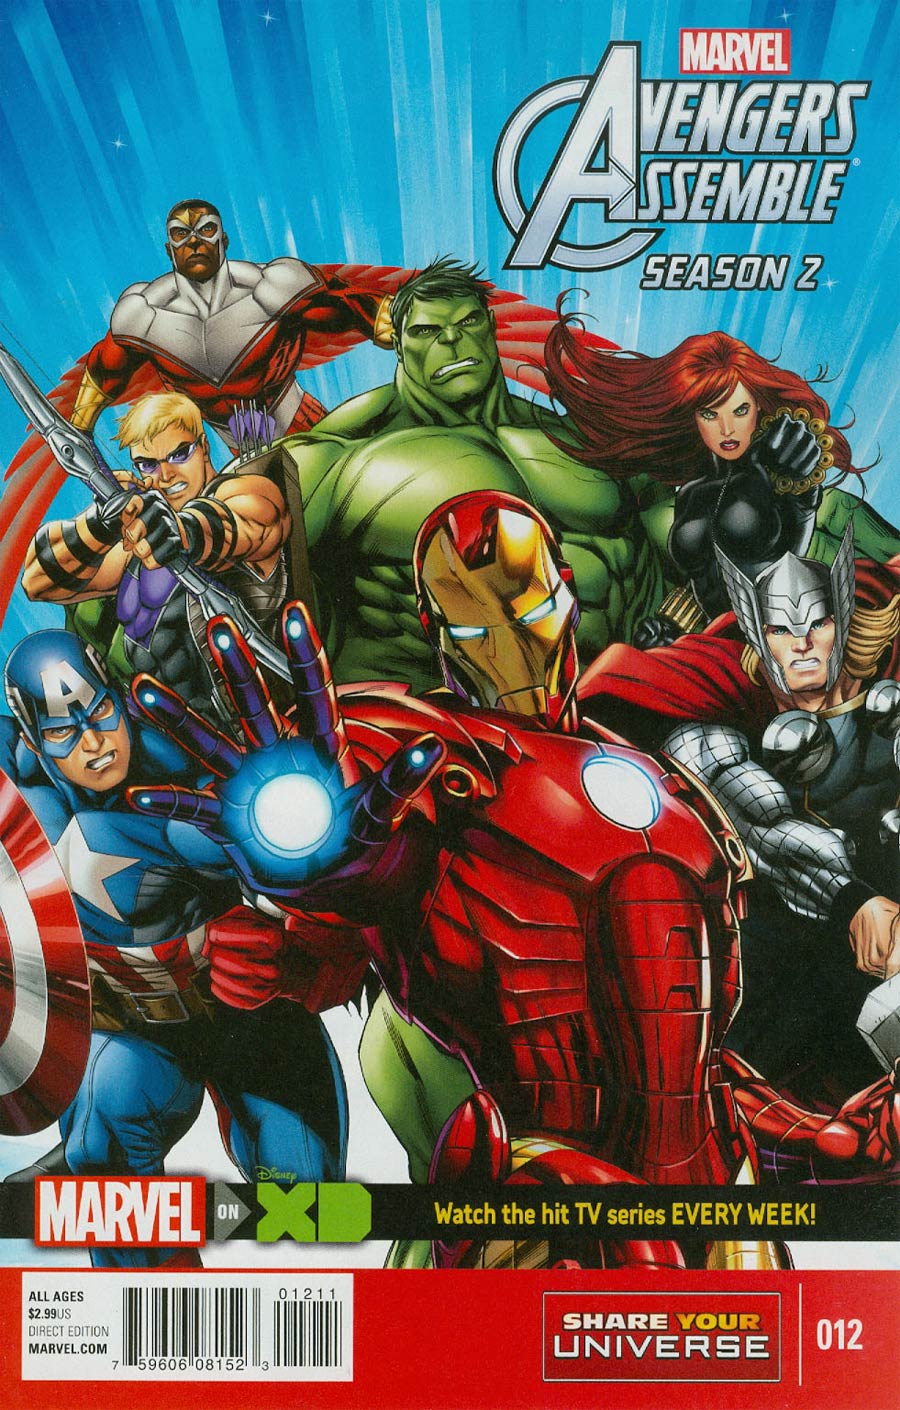 Marvel Universe Avengers Assemble Season 2 #12